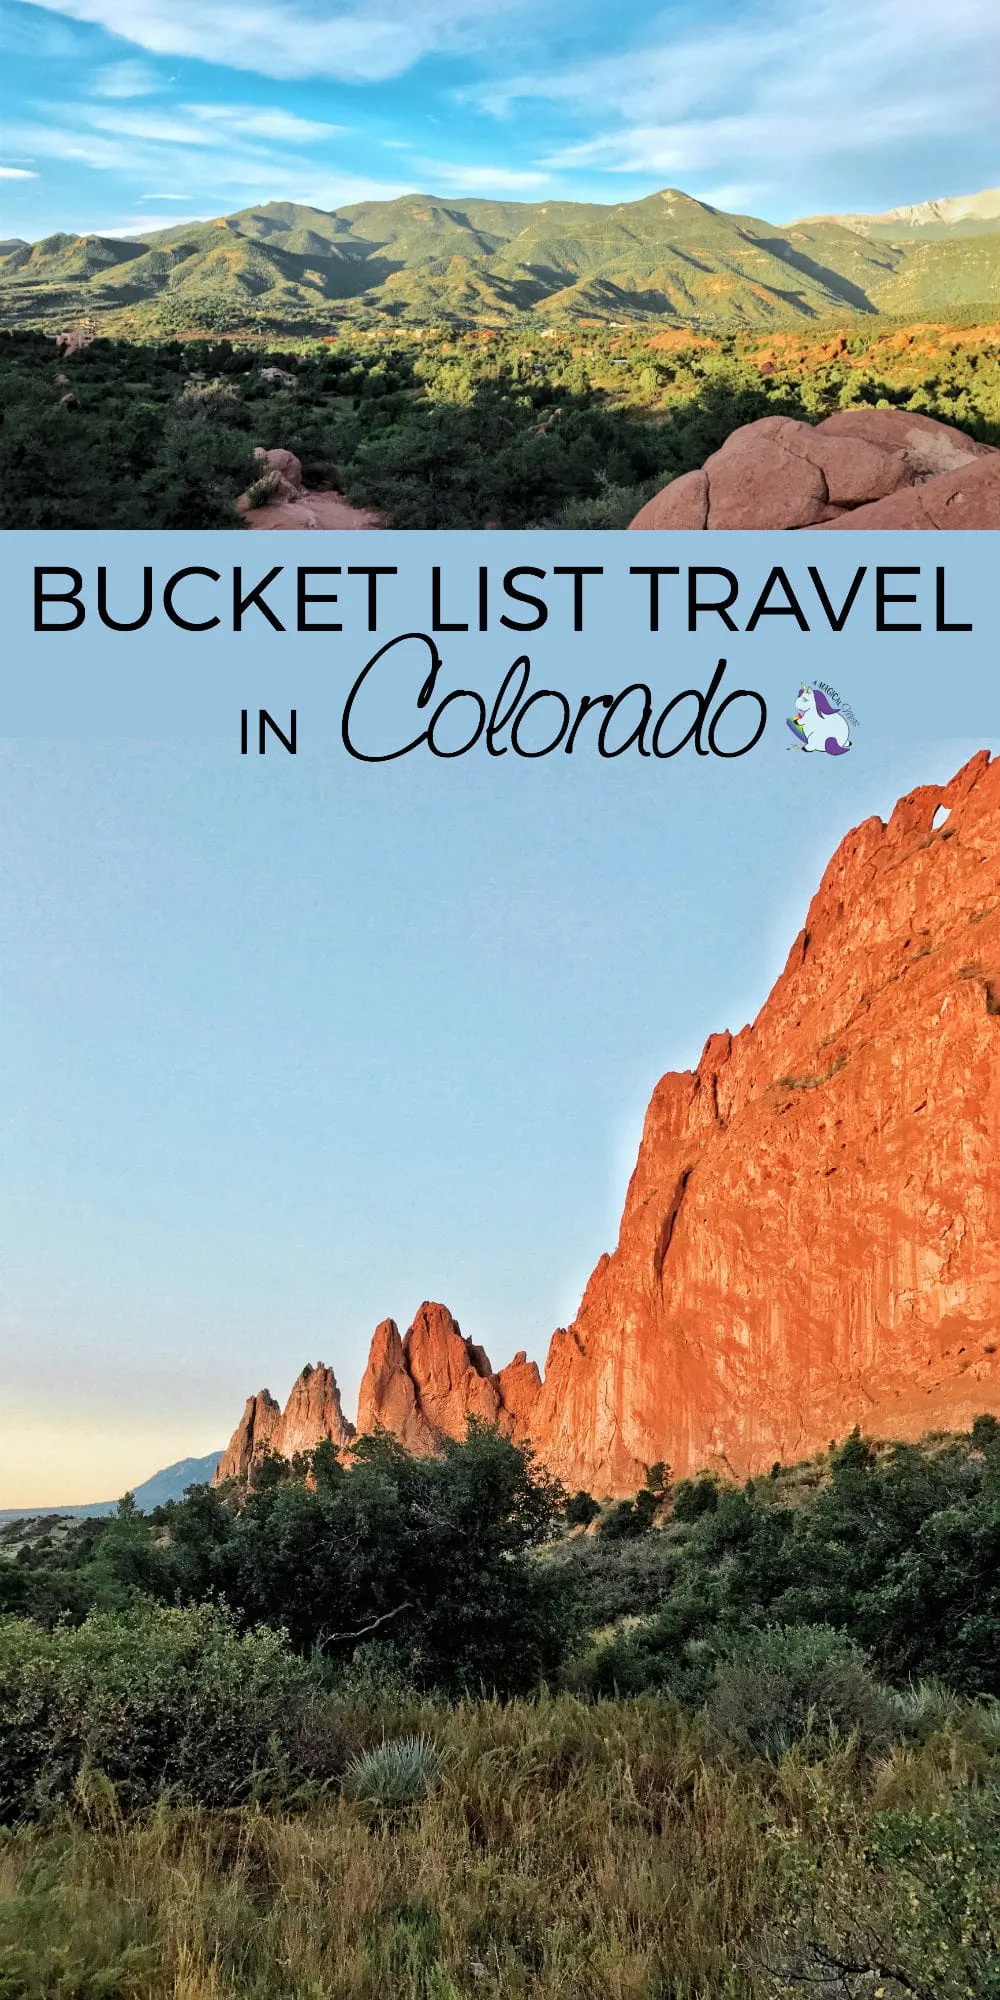 Colorado Vacations - Bucket List Travel Ideas in the Colorado Springs Region